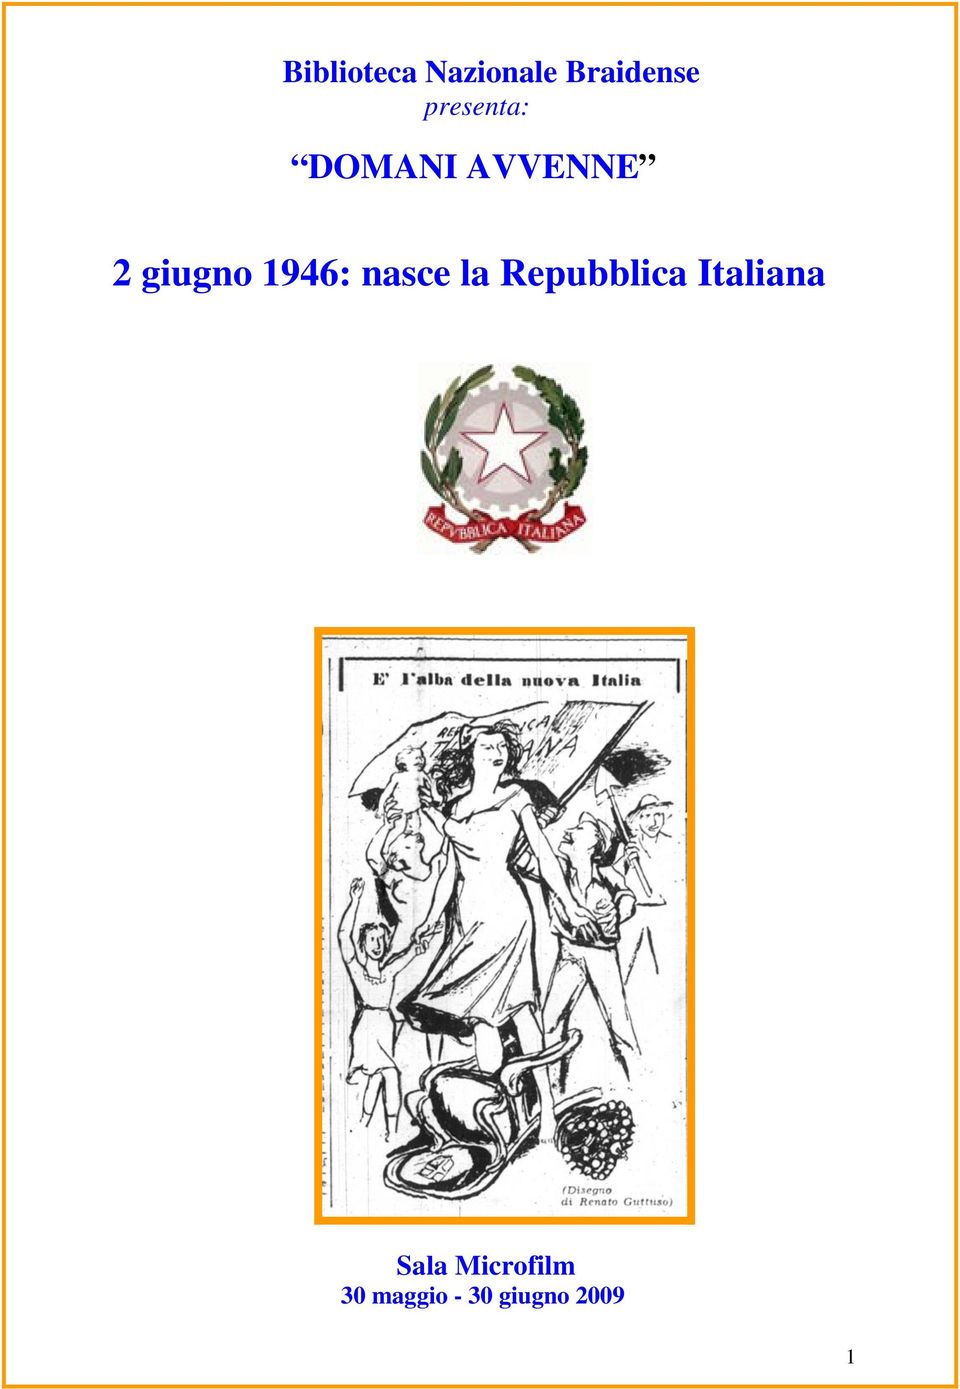 1946: nasce la Repubblica Italiana